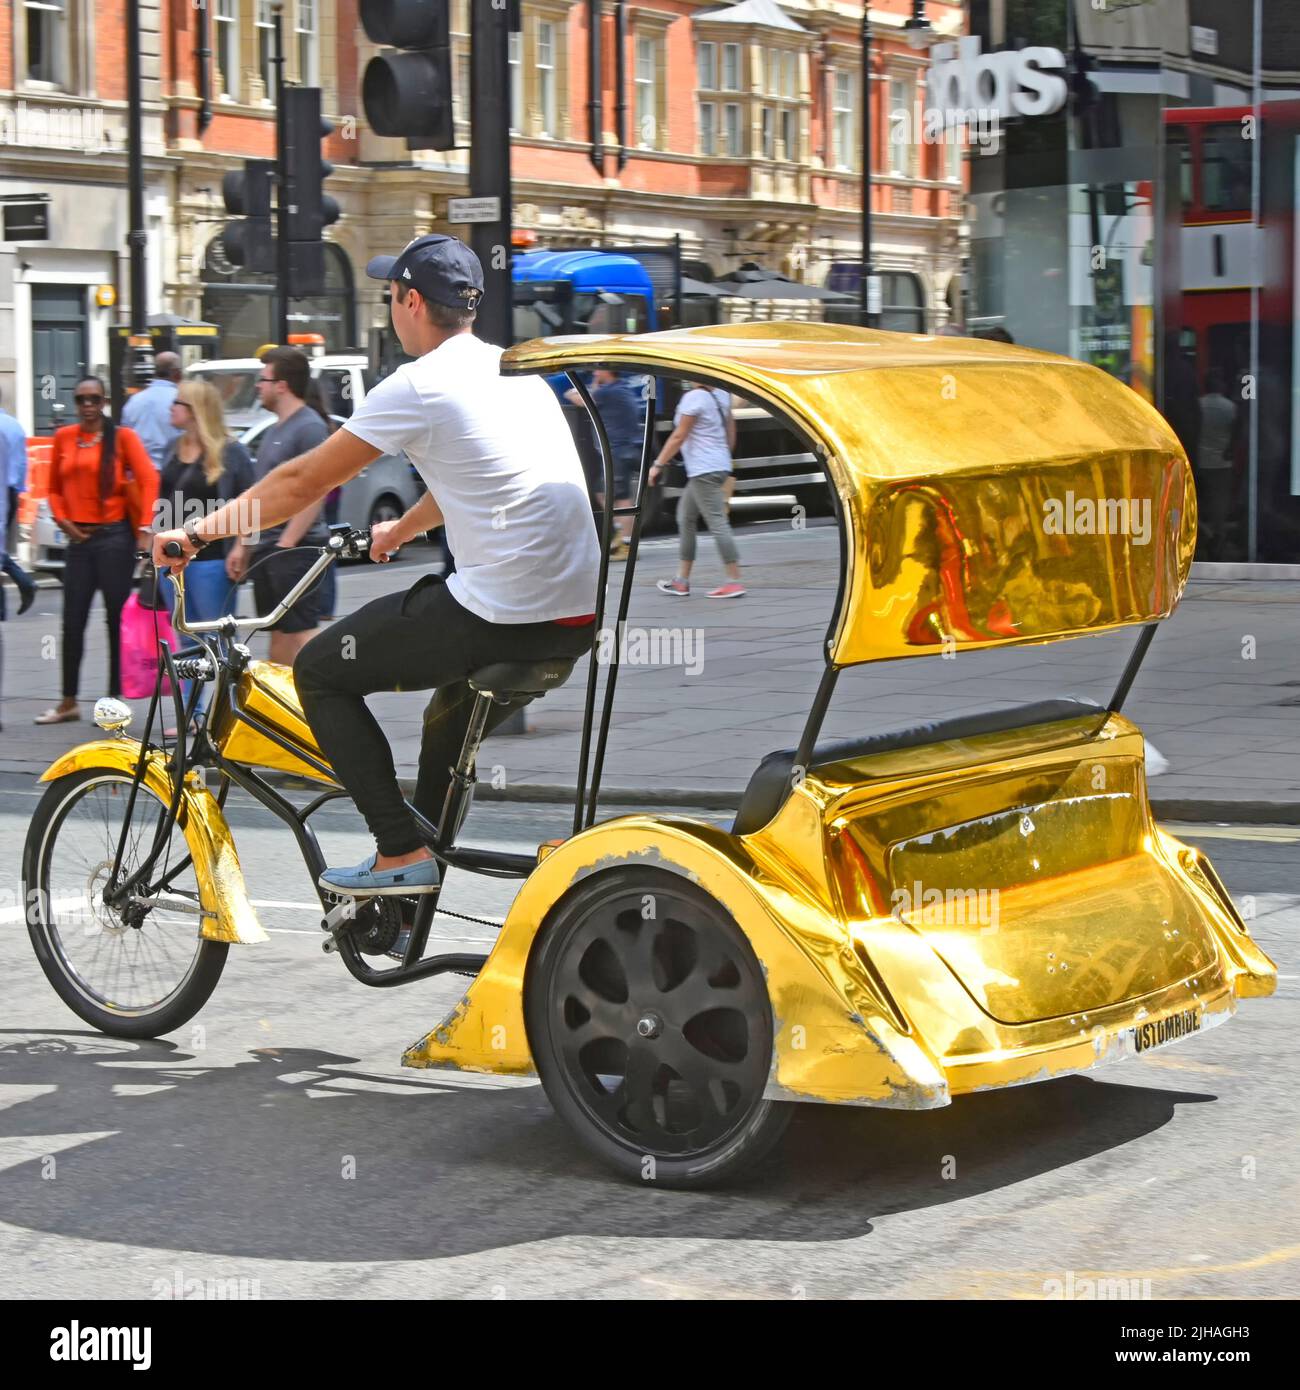 Tricycle et chauffeur de pousse-pousse de couleur or vide à la recherche de clients pédalant le long de Londres West End Oxford Street shopping et zone touristique Angleterre Royaume-Uni Banque D'Images